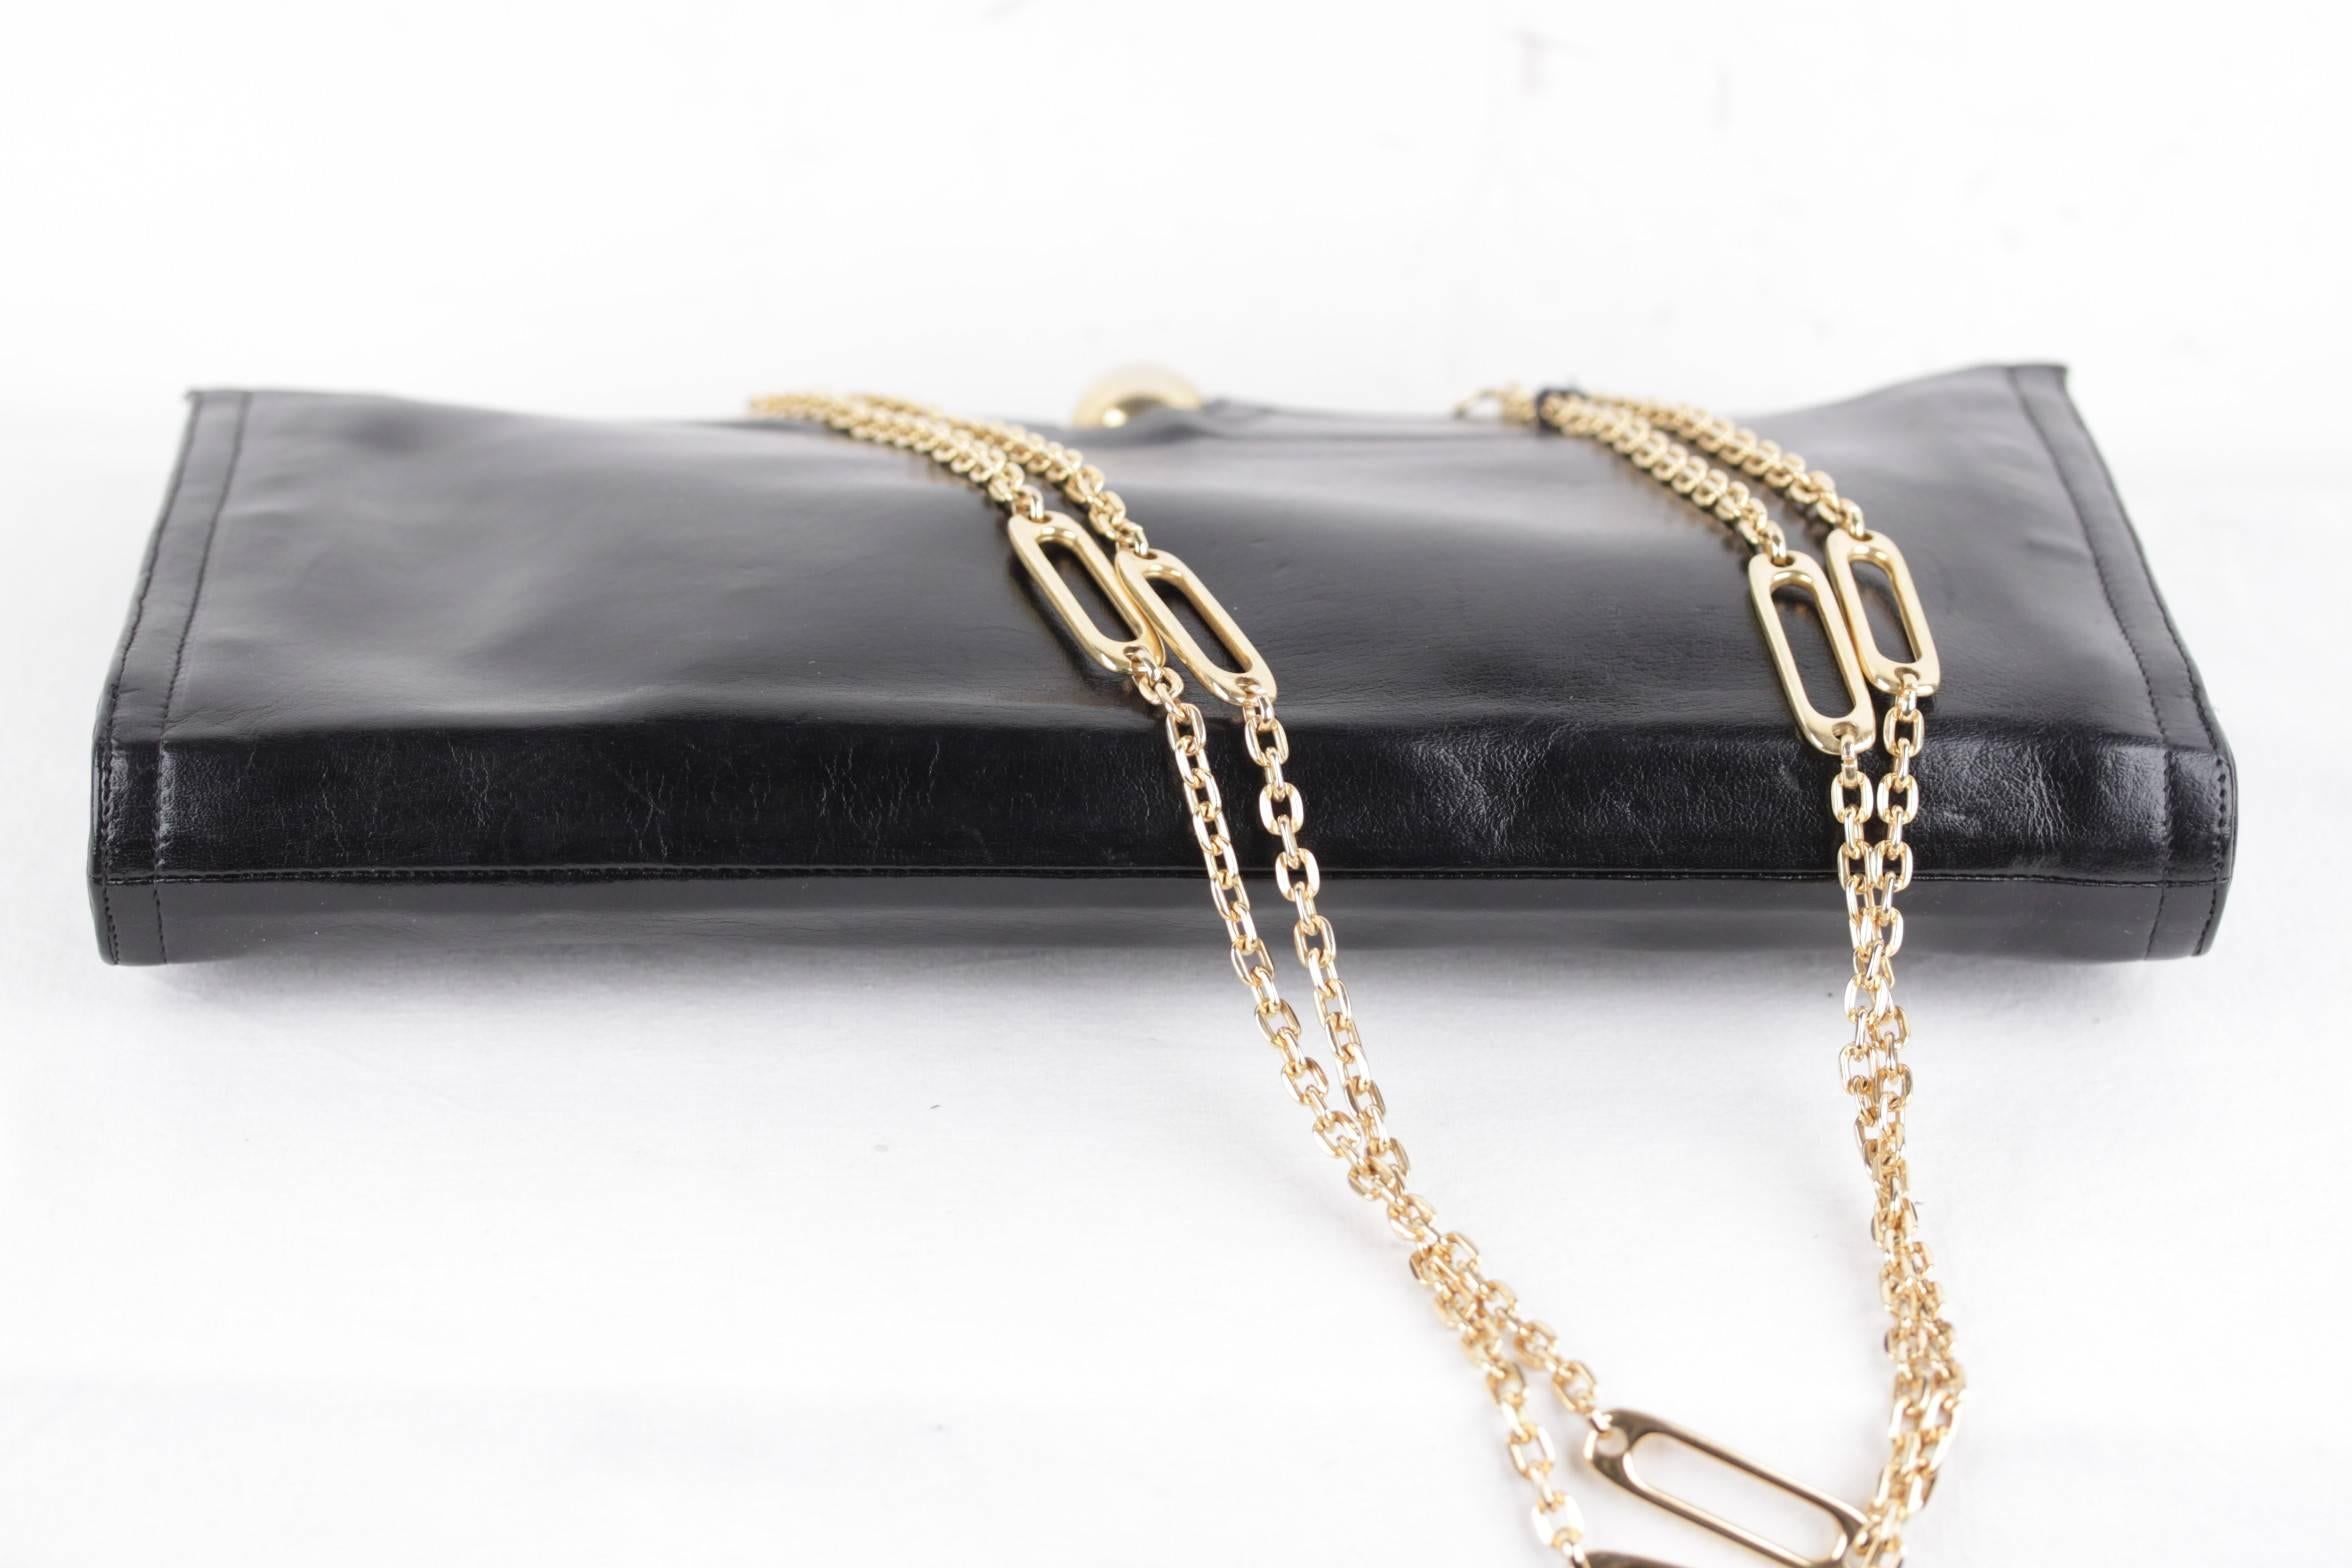 BOTTEGA VENETA Vintage Black Leather CLUTCH Handbag SHOULDER BAG Chain Strap 1